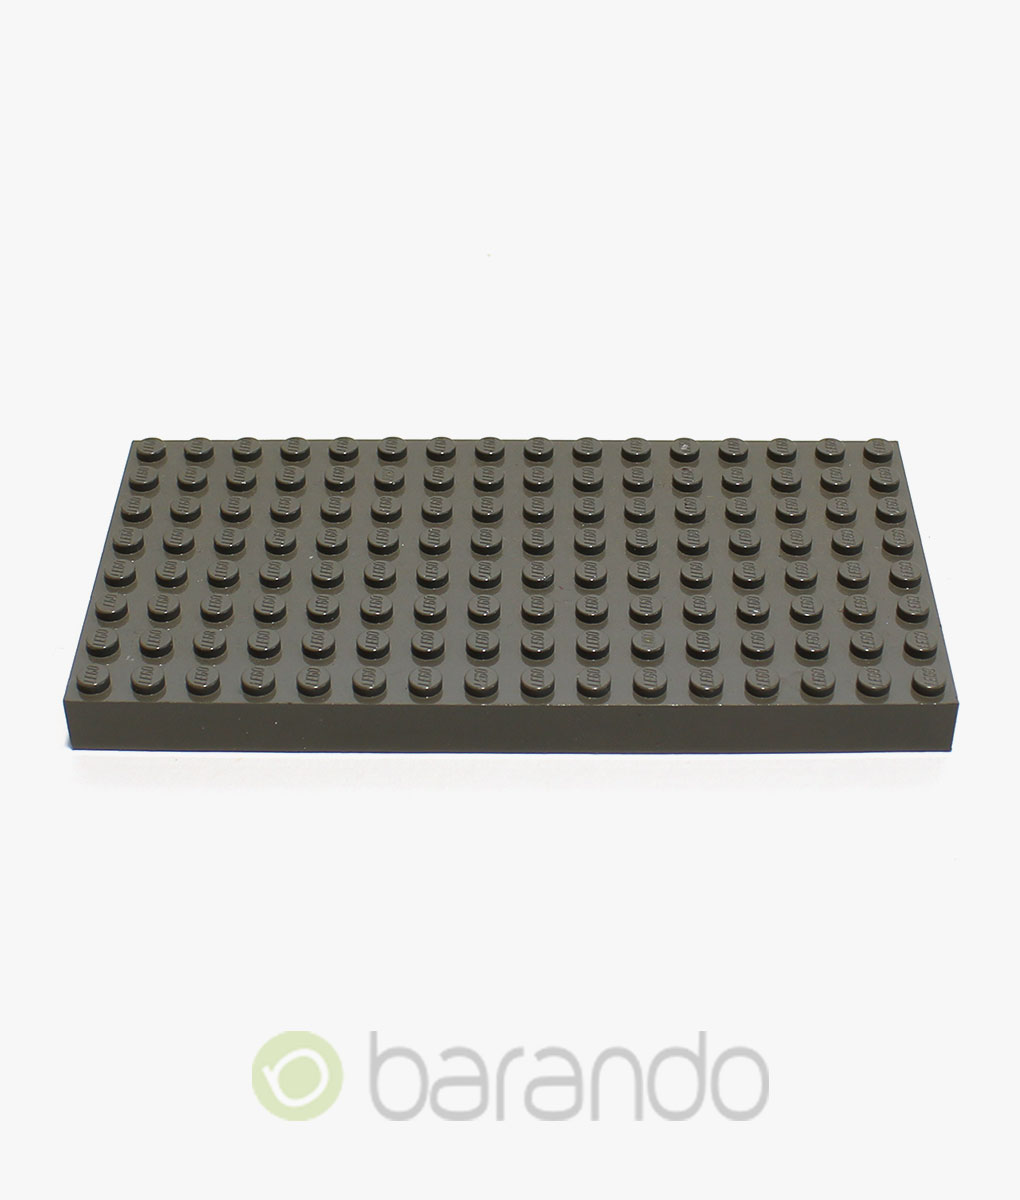 LEGO 8 x Platte Bauplatte flach 3021   2x3 Noppen  alt braun 